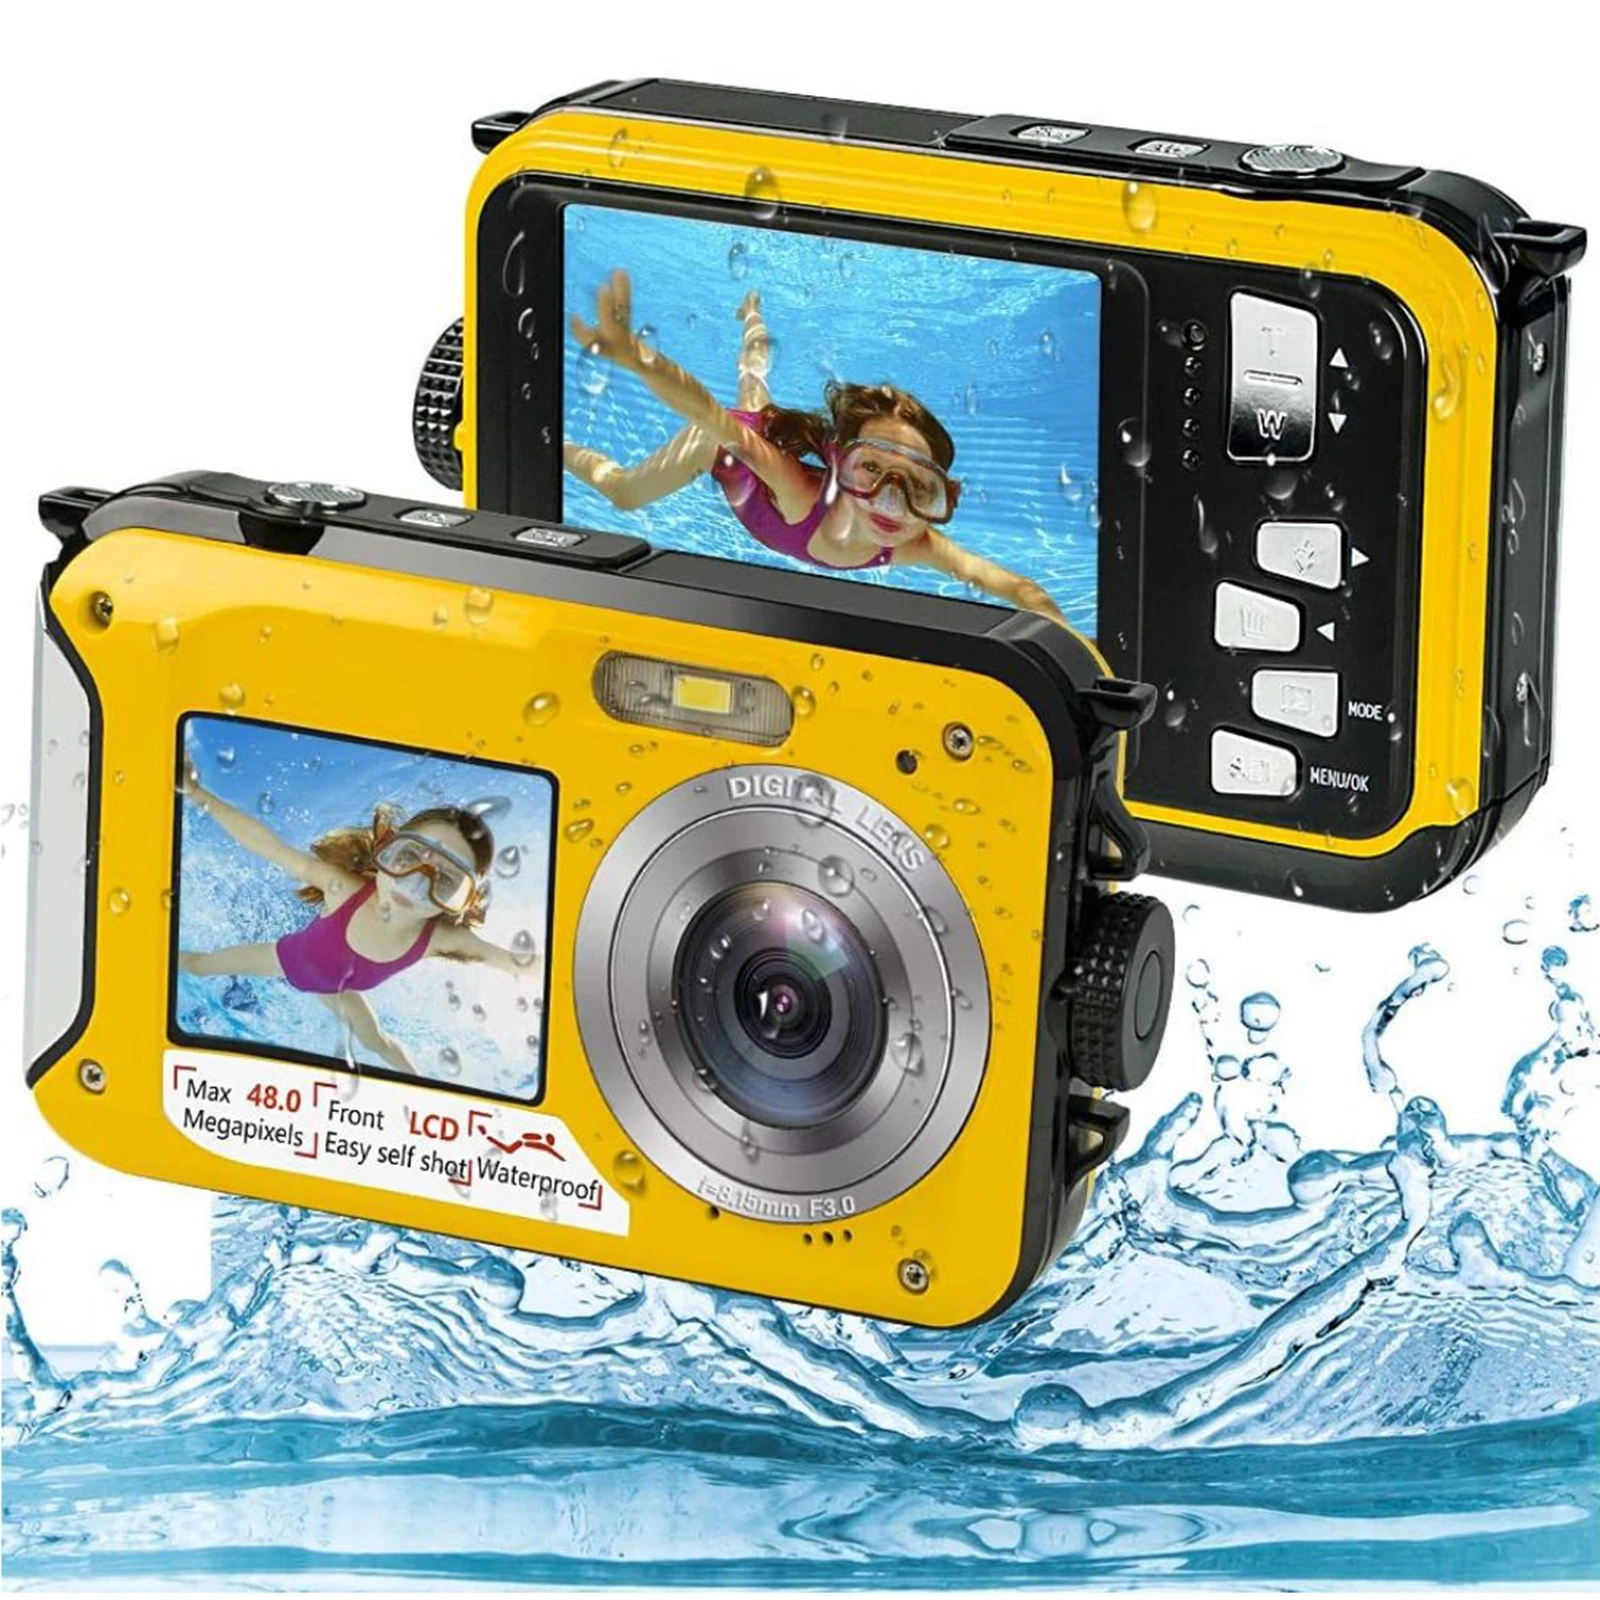 Waterproof Camera Underwater Cameras FHD 2.7K 48 MP Video Recorder Selfie Dual Screens 16X Digital Zoom Underwater Digital Camera for Snorkeling Camping Traveling Yellow 